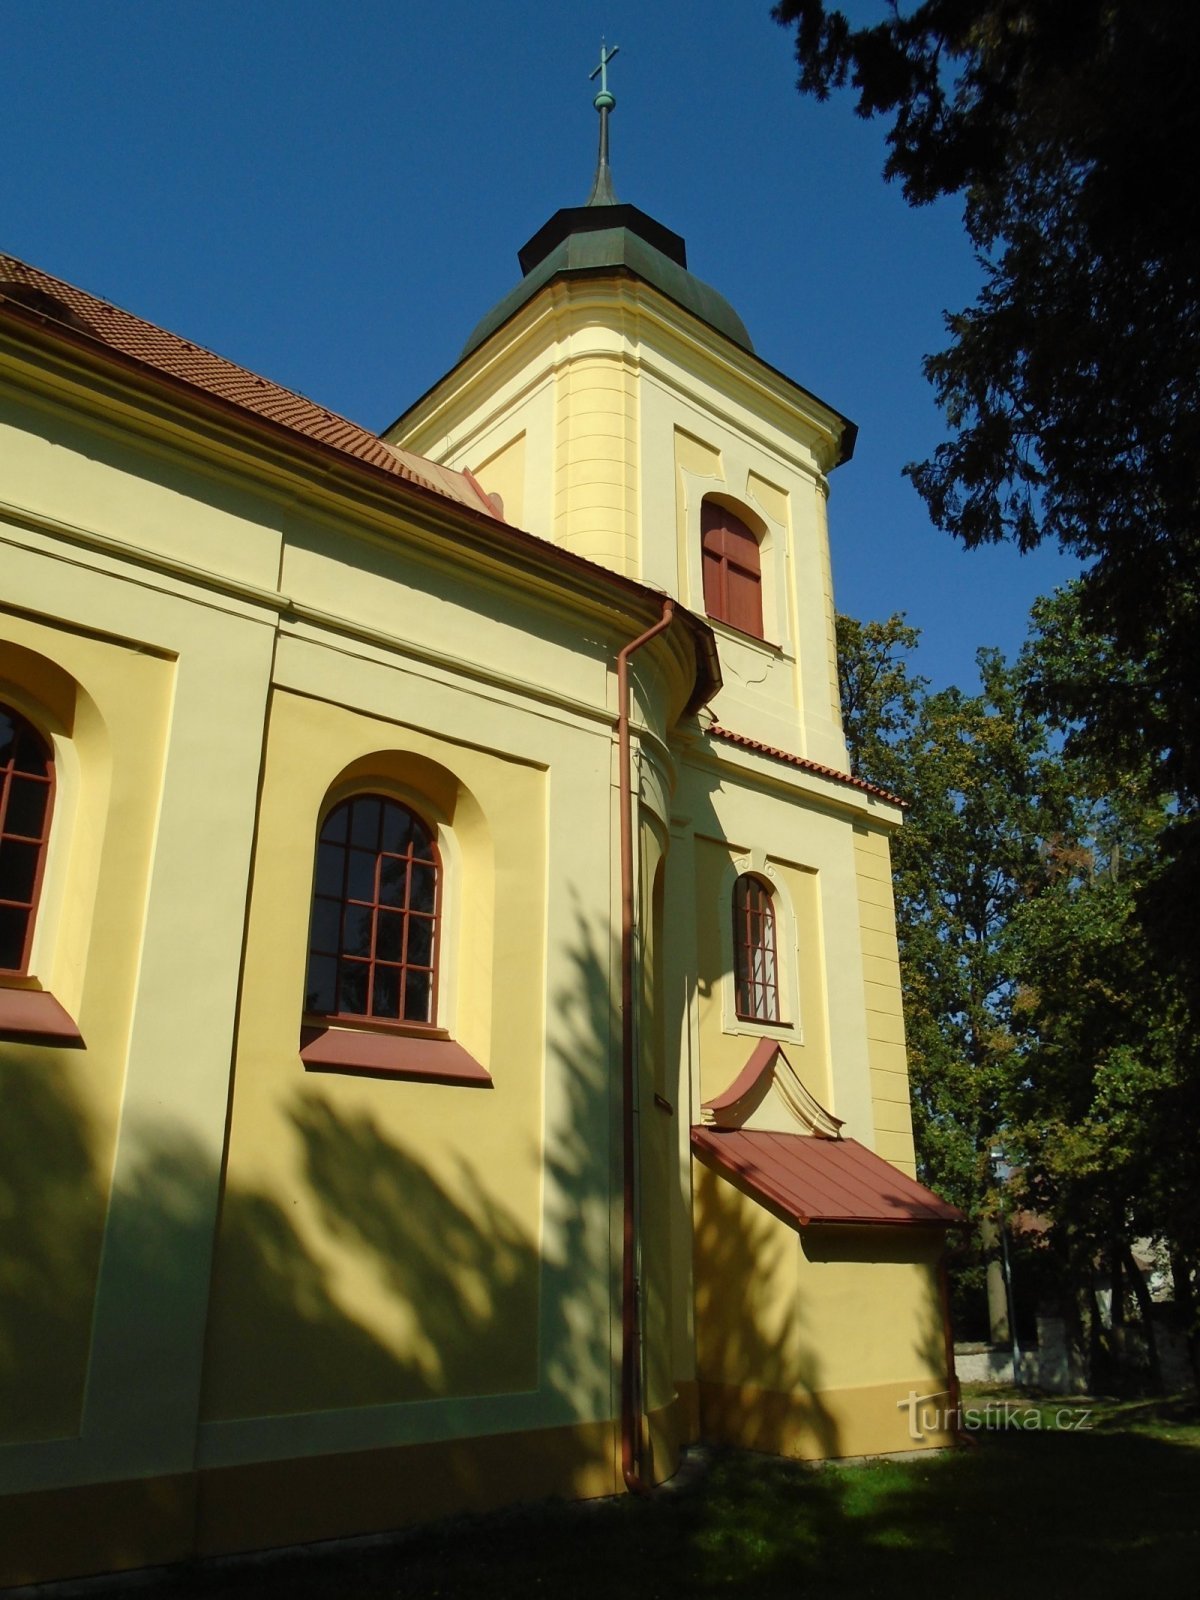 Biserica Sf. Gotharda (Înaltul Chvojno)